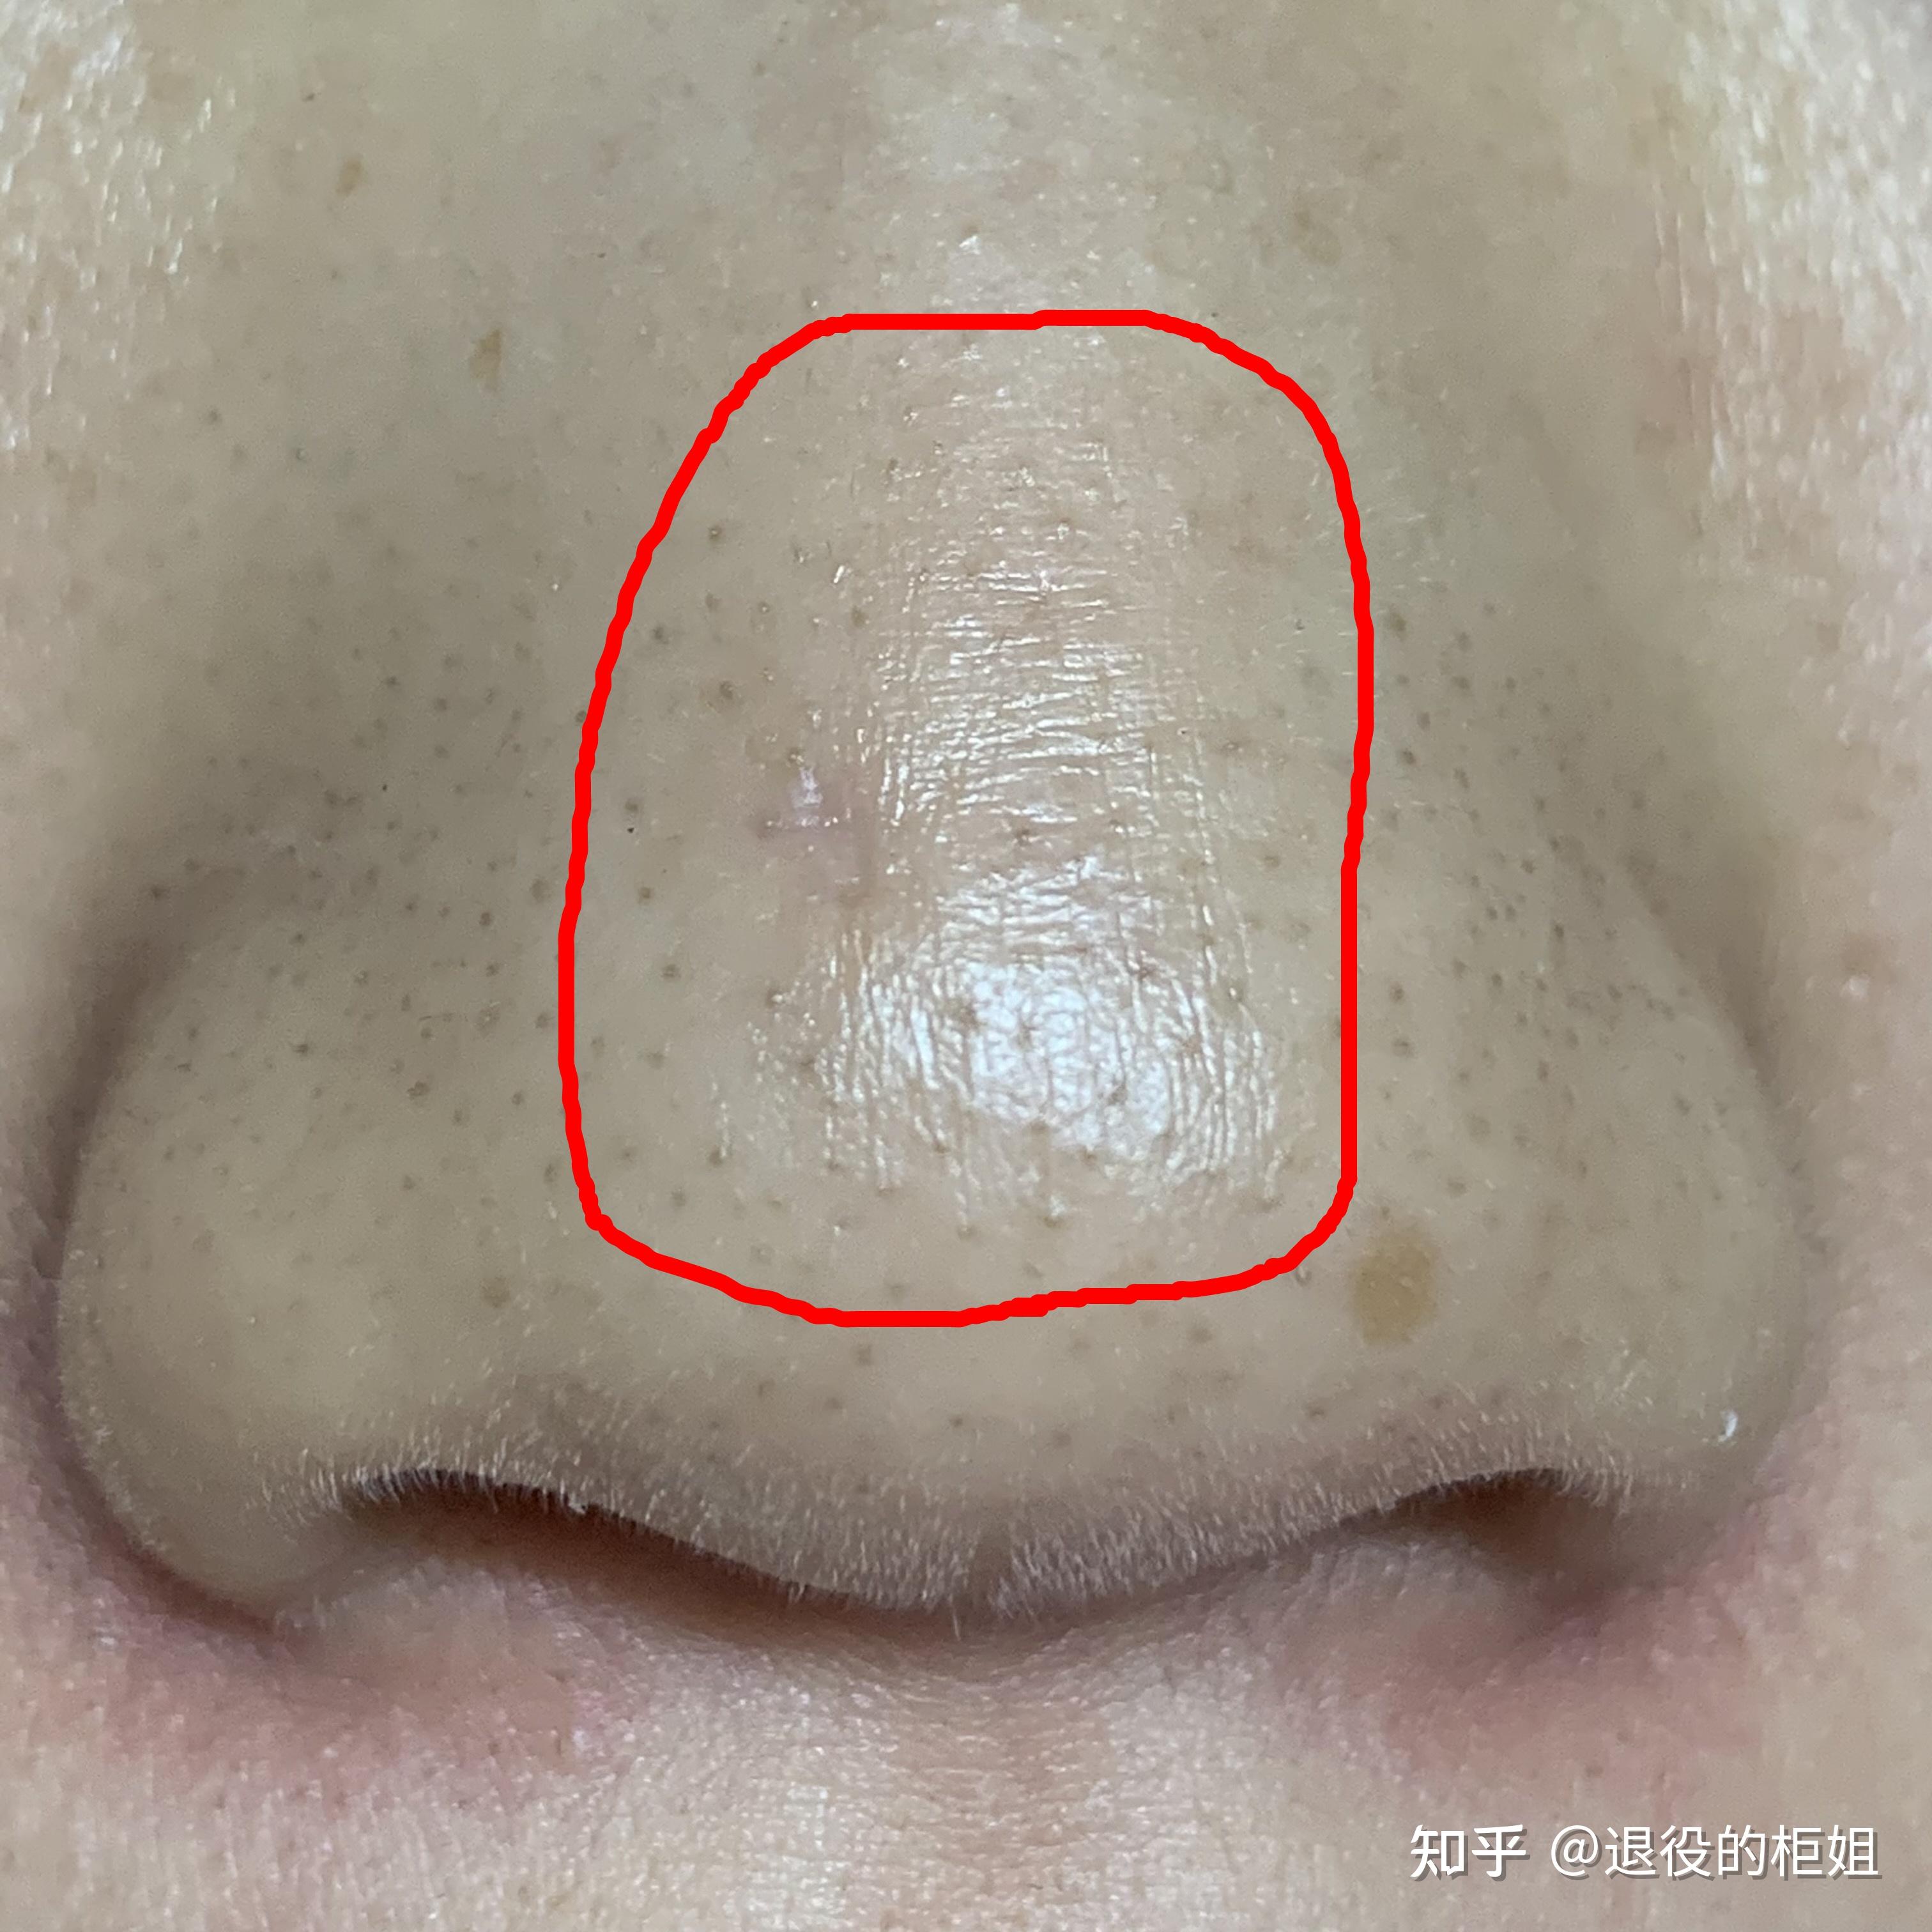 鼻翼疤痕修复+鼻槛中部缺损修复-杨杰-爱问医生